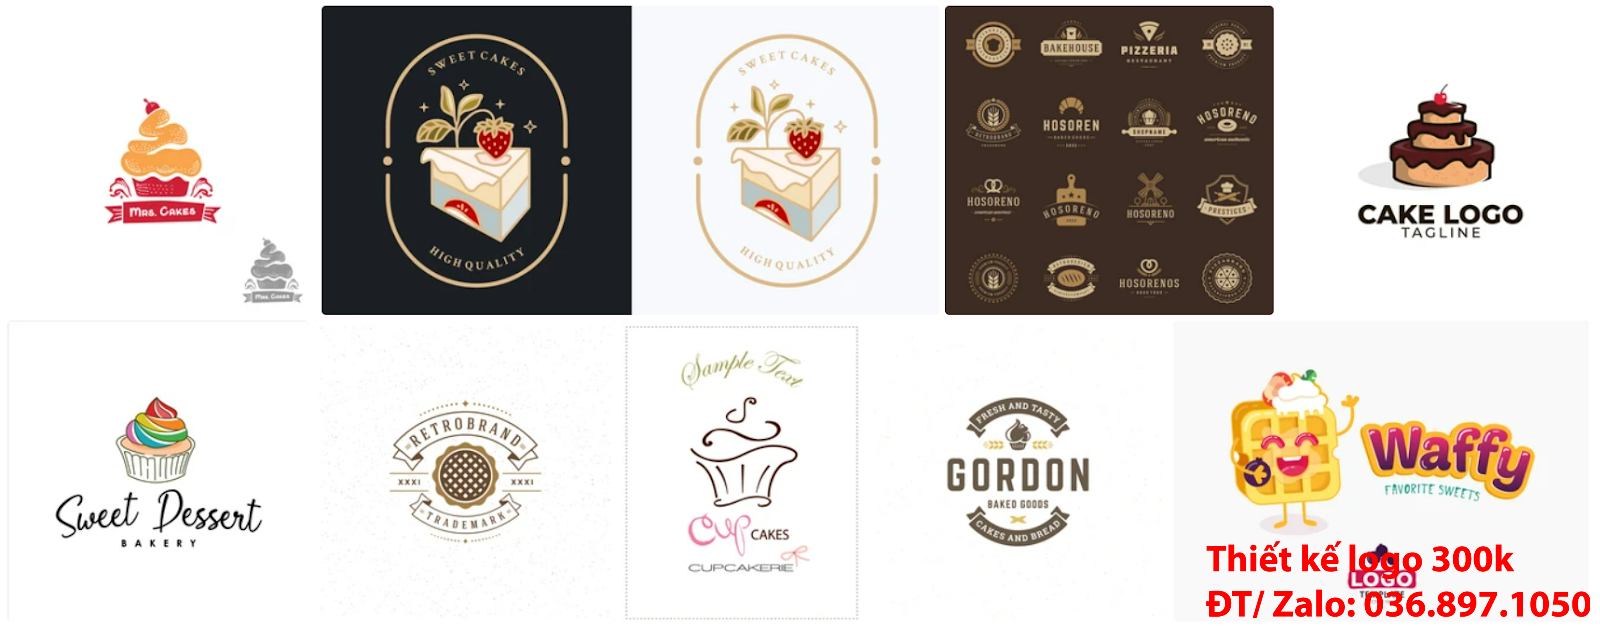 Dịch vụ cung cấp mẫu thiết kế logo bánh kem đẹp nhất hiện nay đơn giản